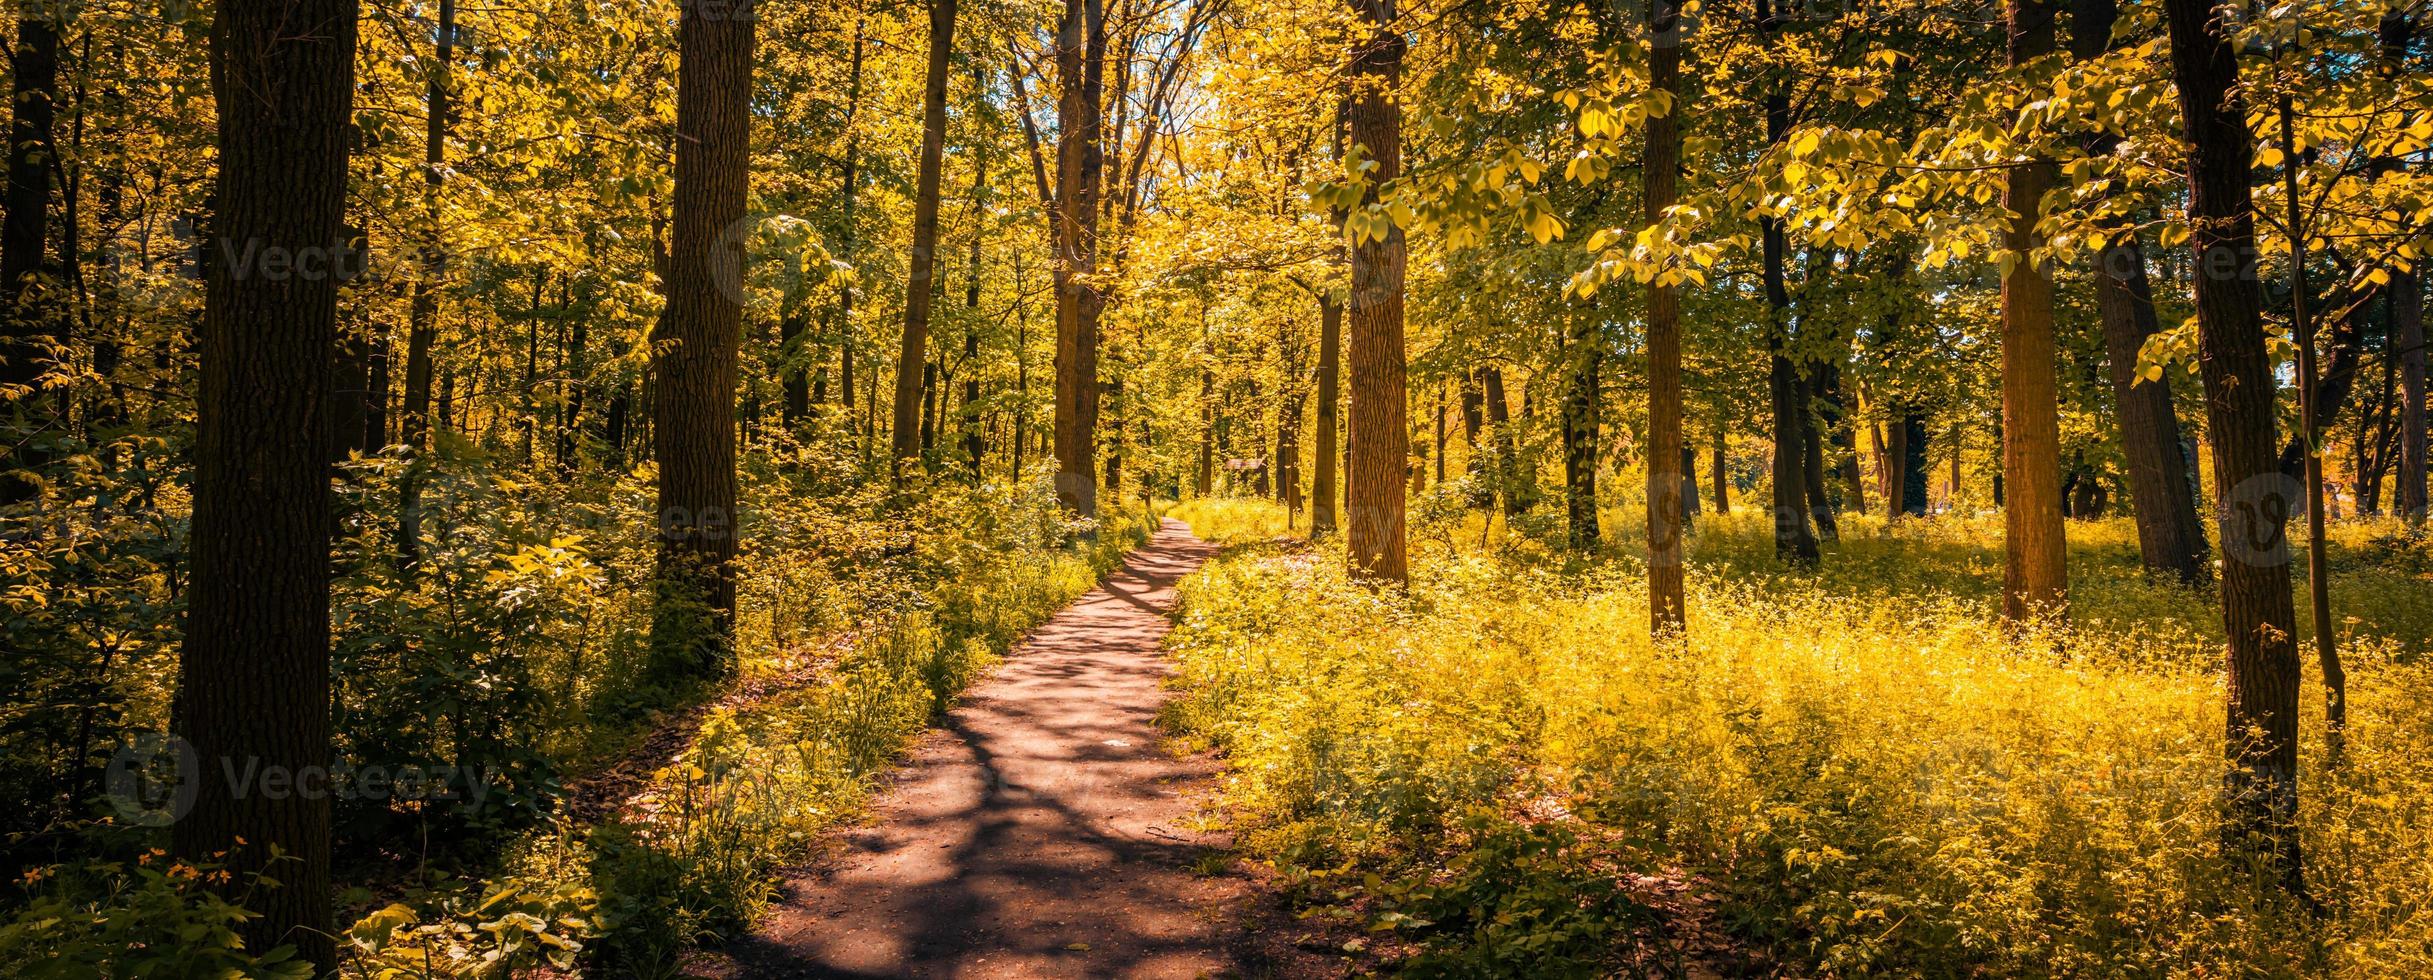 sendero tranquilo en un parque en otoño, con rayos de luz cayendo a través de los árboles. increíble paisaje natural, aventura de senderismo, caminata por la libertad, hierba y árboles con hojas coloridas foto